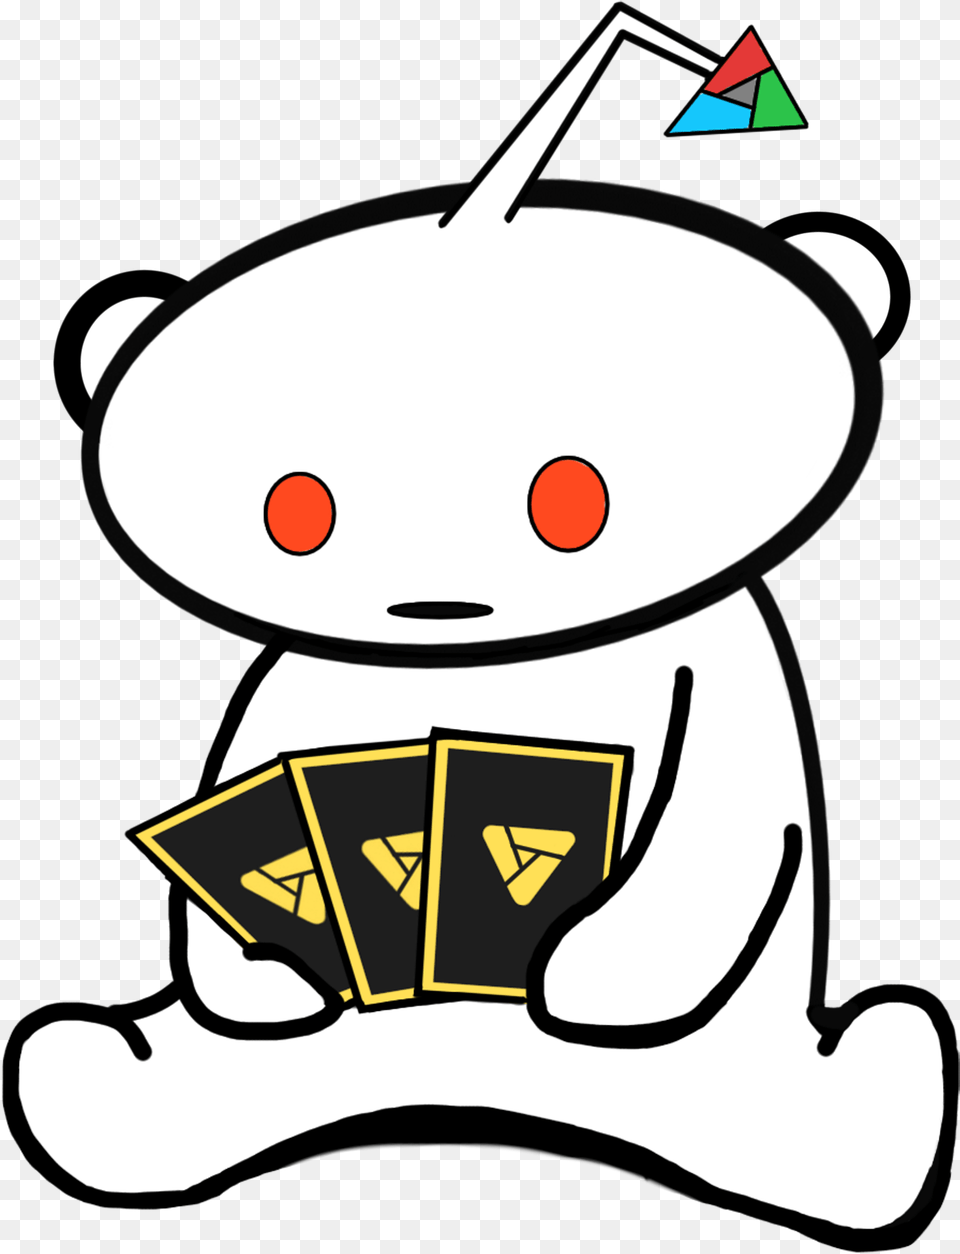 Reddit Logo Transparent Background Png Image